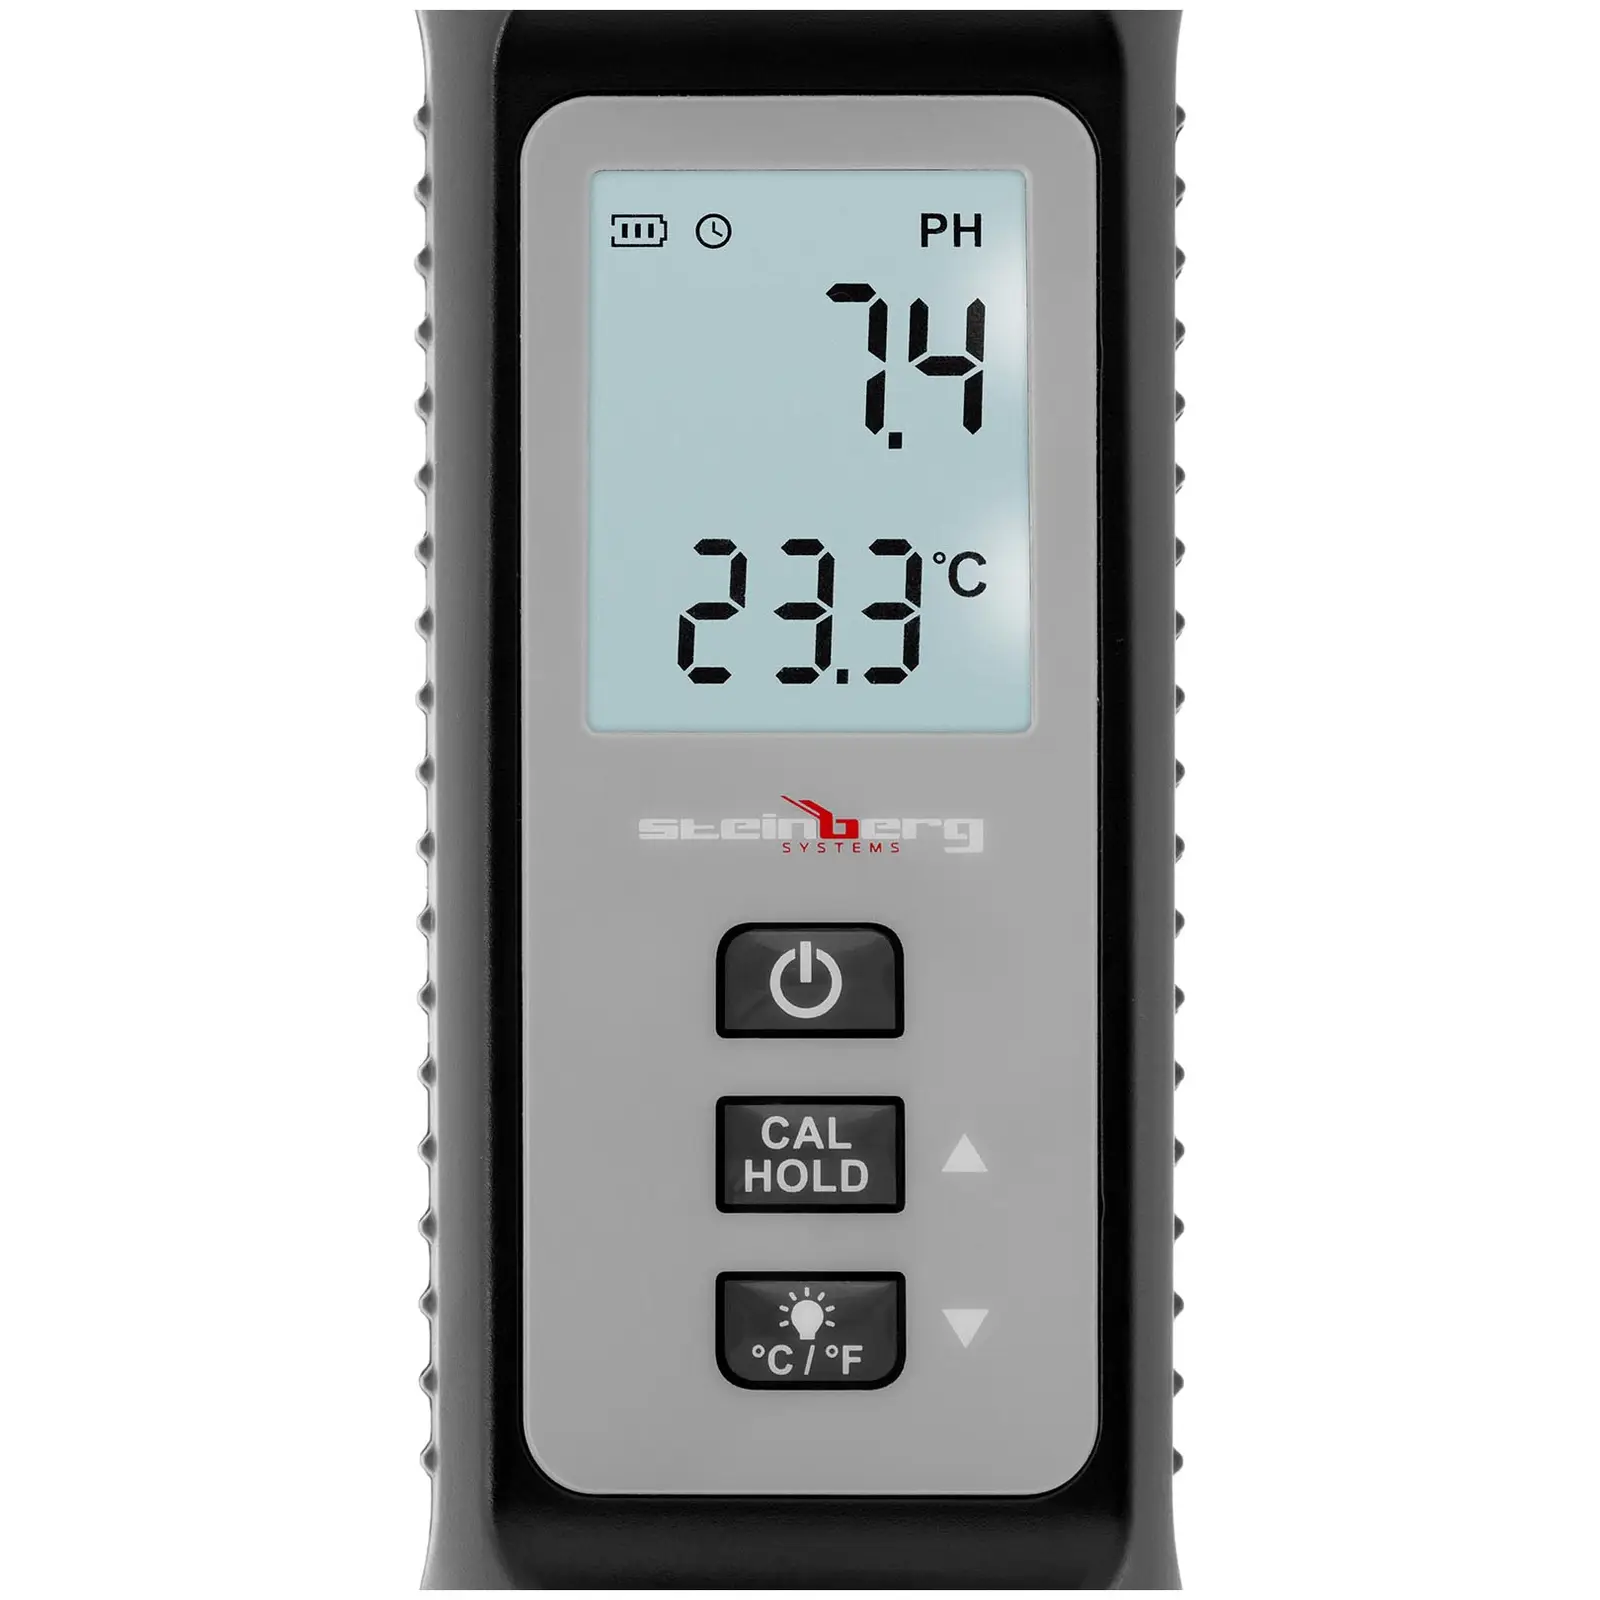 Misuratore ph - LCD - °C, °F - Accuratezza ±0,1